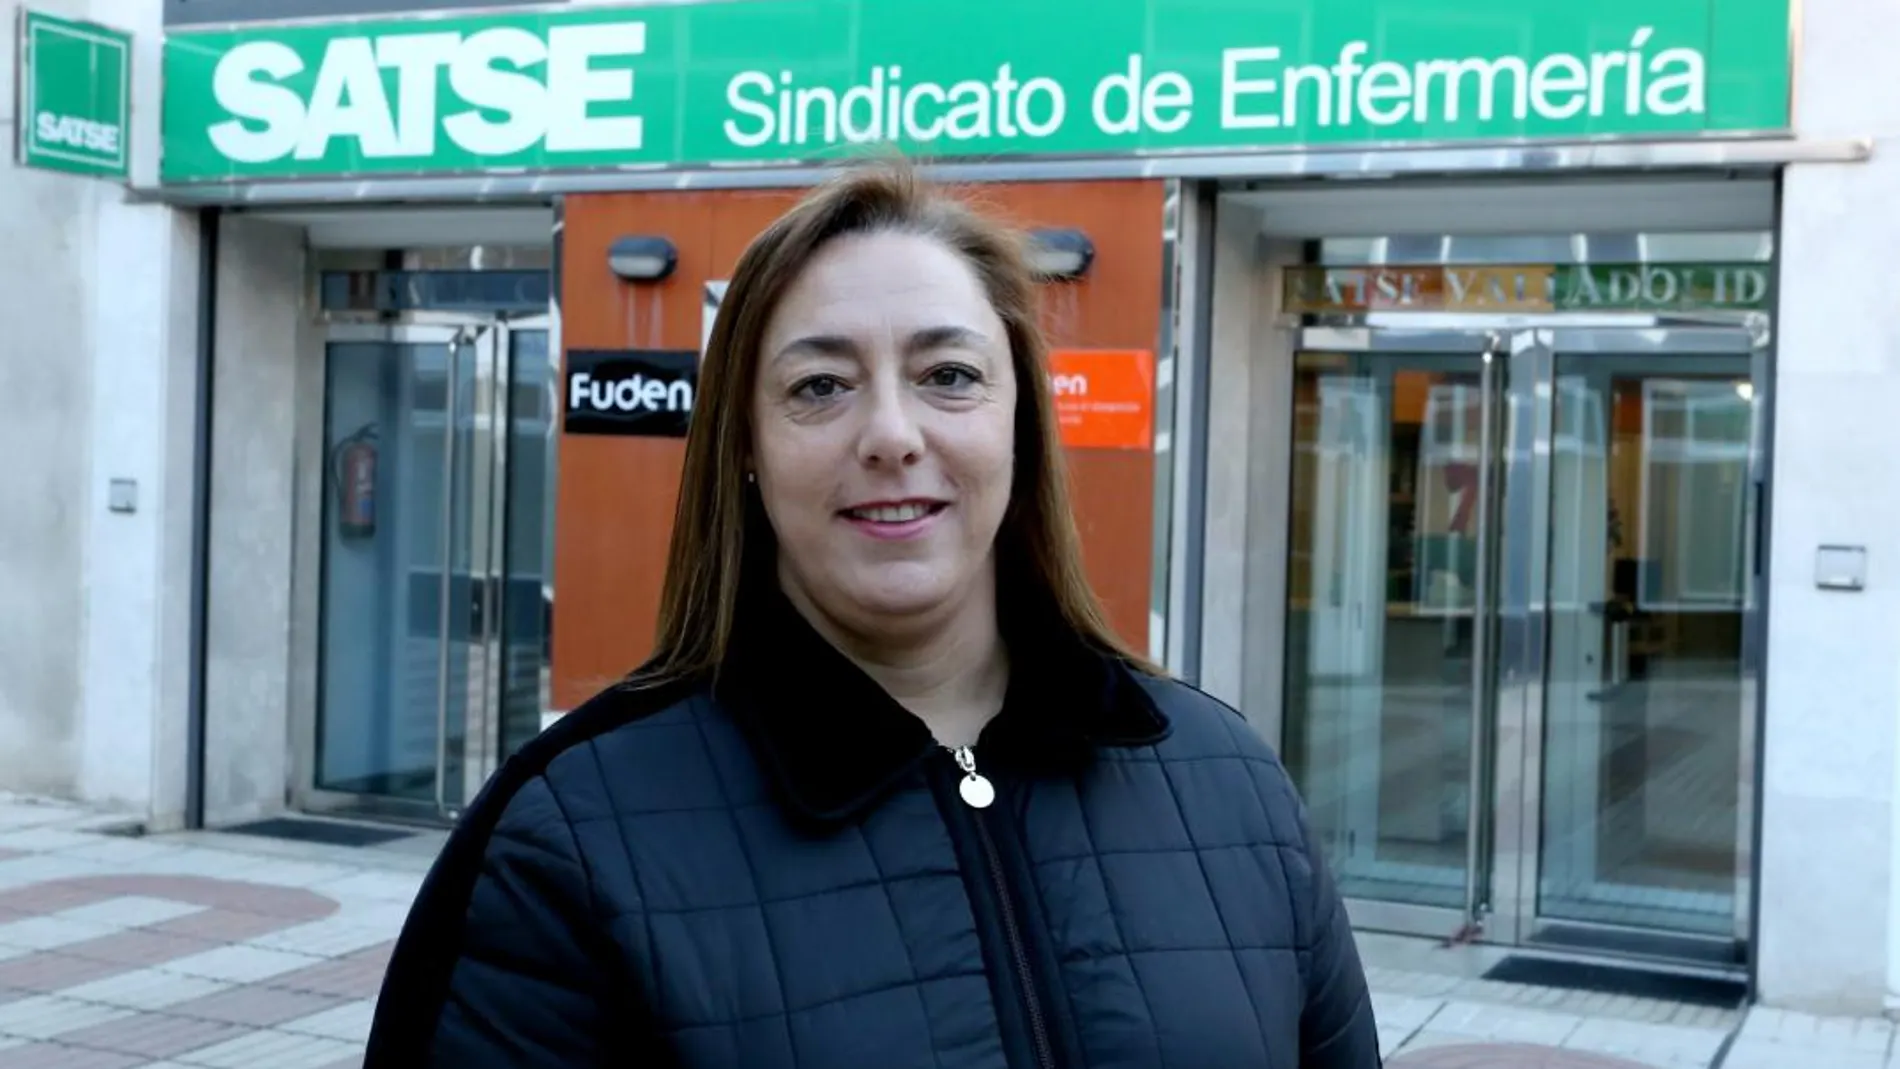 La secretaria general del sindicato de enfermería Satse Castilla y León, Mercedes Gago, ante la sede de la entidad en Valladolid